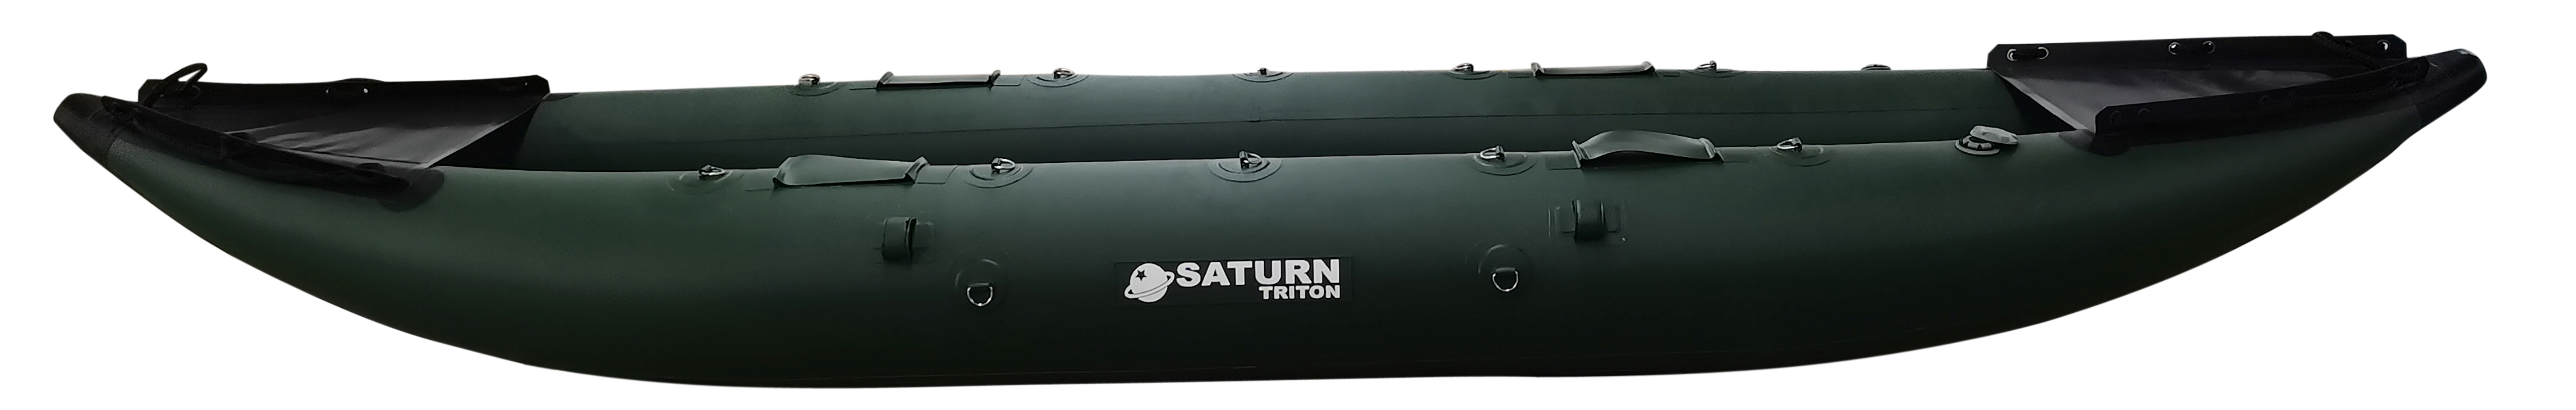 2022 Saturn Triton 13' Fishing Kayak